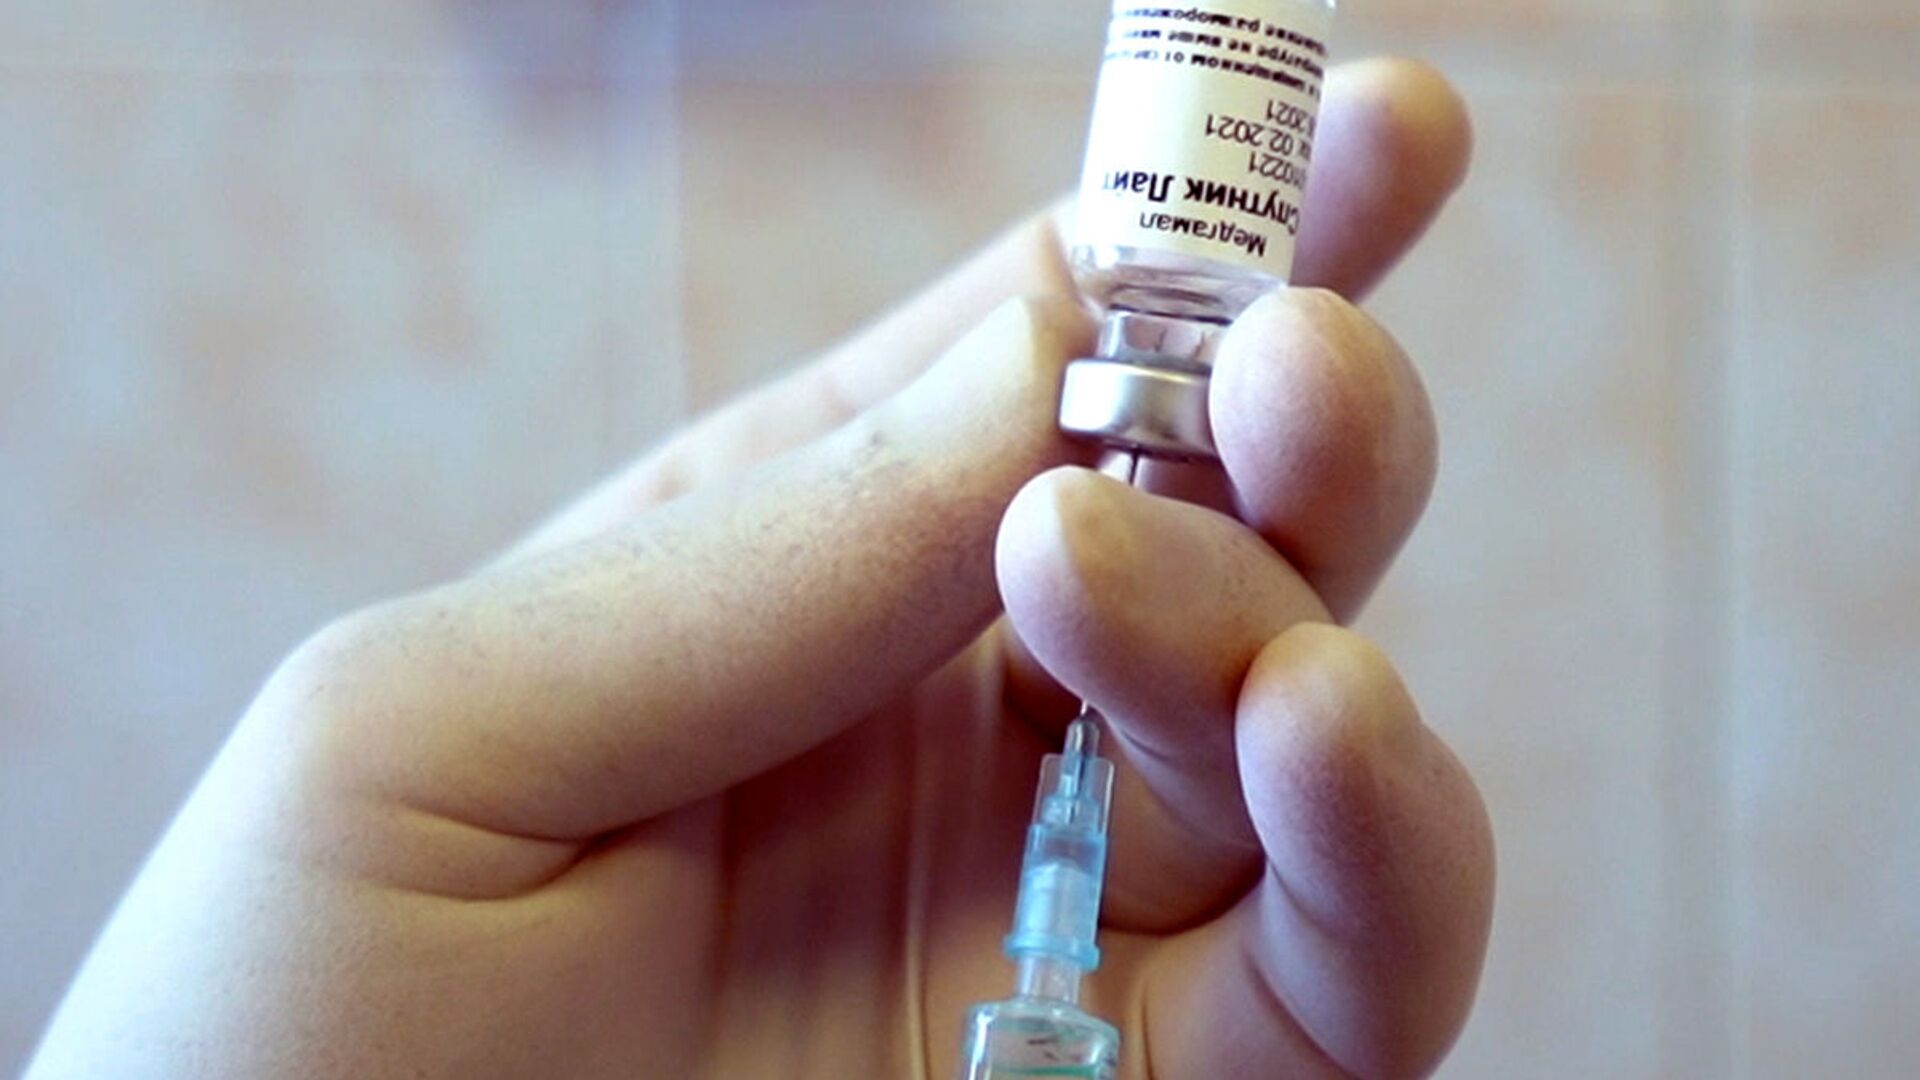 ثبت واکسن تک مؤلفه ای روسی اسپوتنیک-لایت در قرقیزستان - اسپوتنیک ایران  , 1920, 25.06.2021